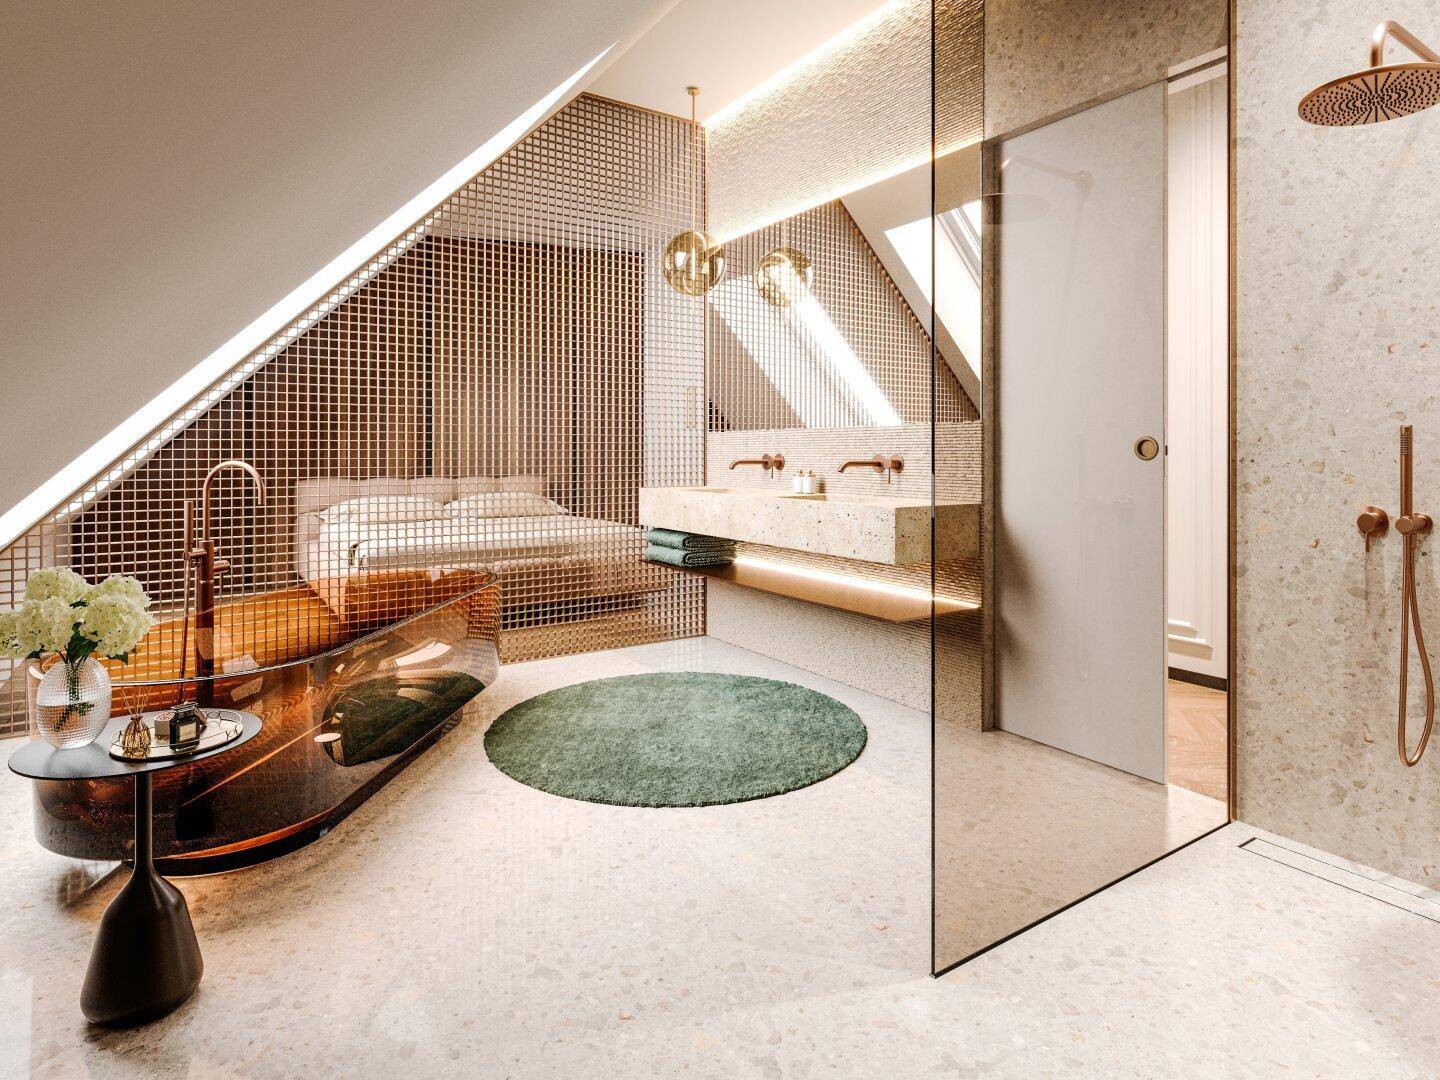 en suite Badezimmer in modernem Design